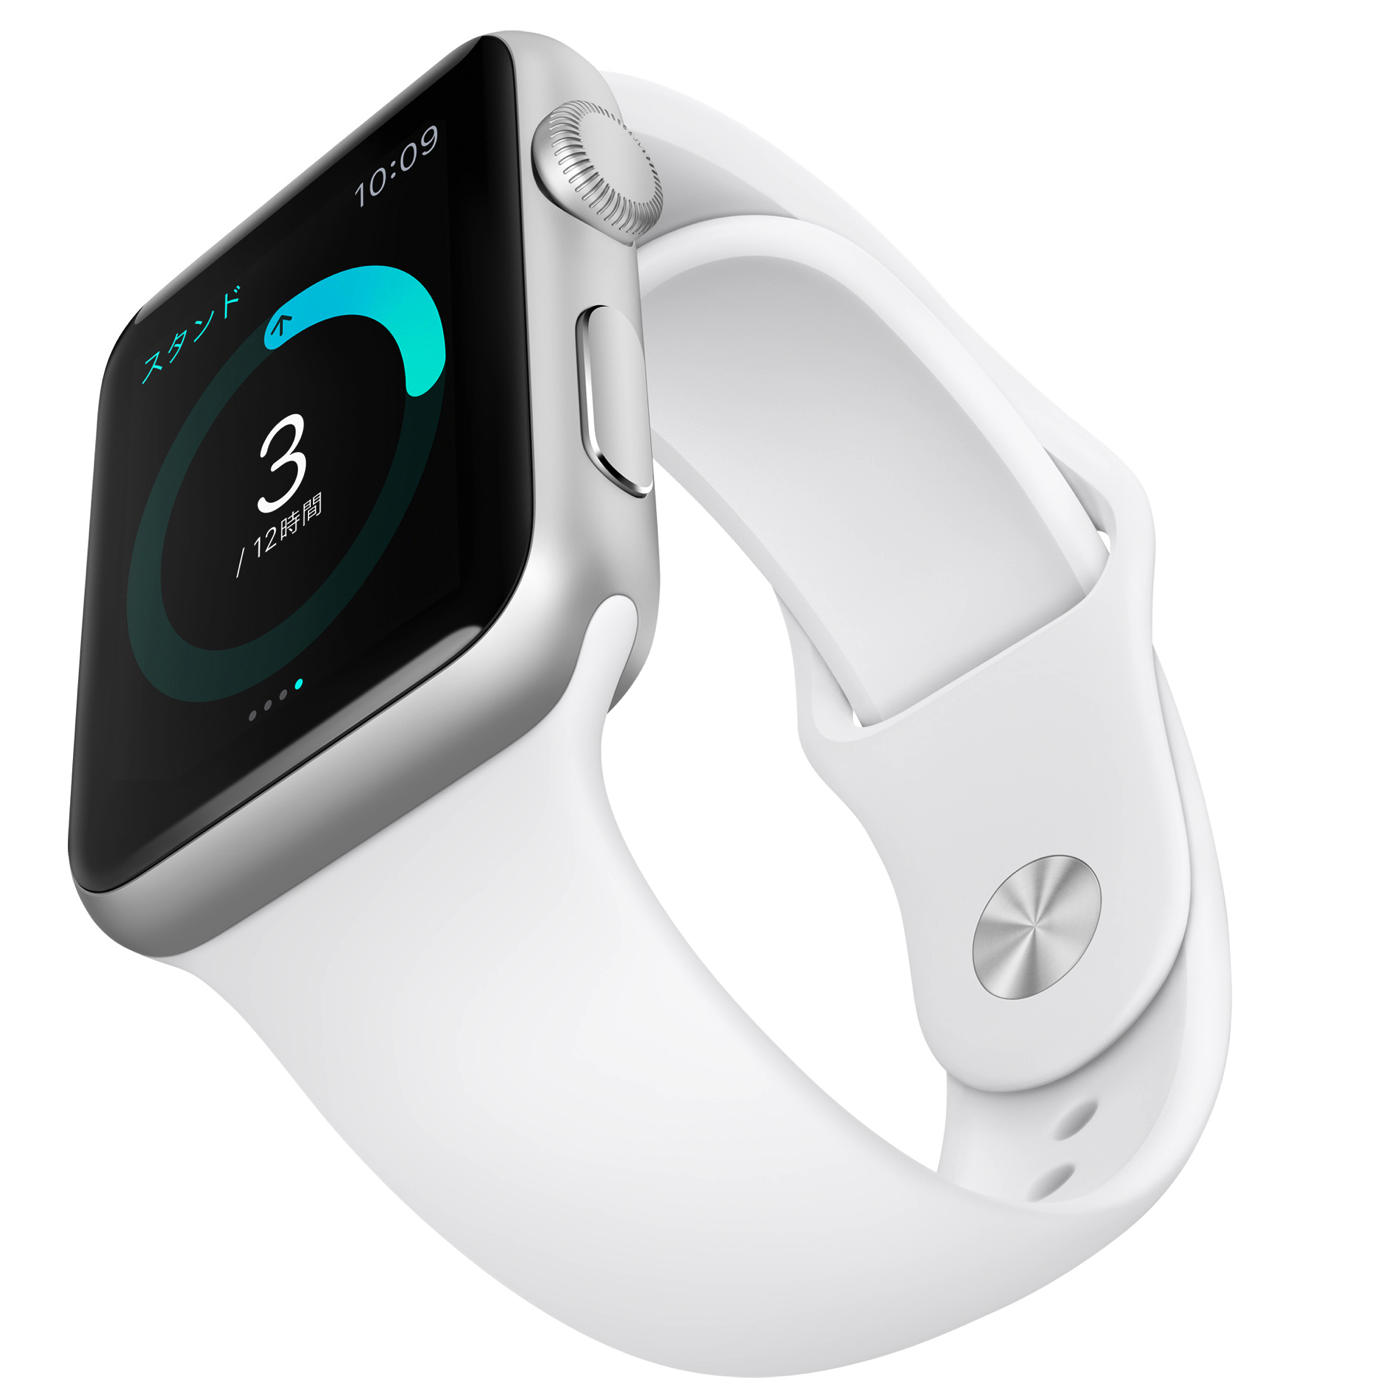 [Apple][AppleWatch]iPhoneのApple Storeで念願のApple Watch(ゴールド)を注文したよ